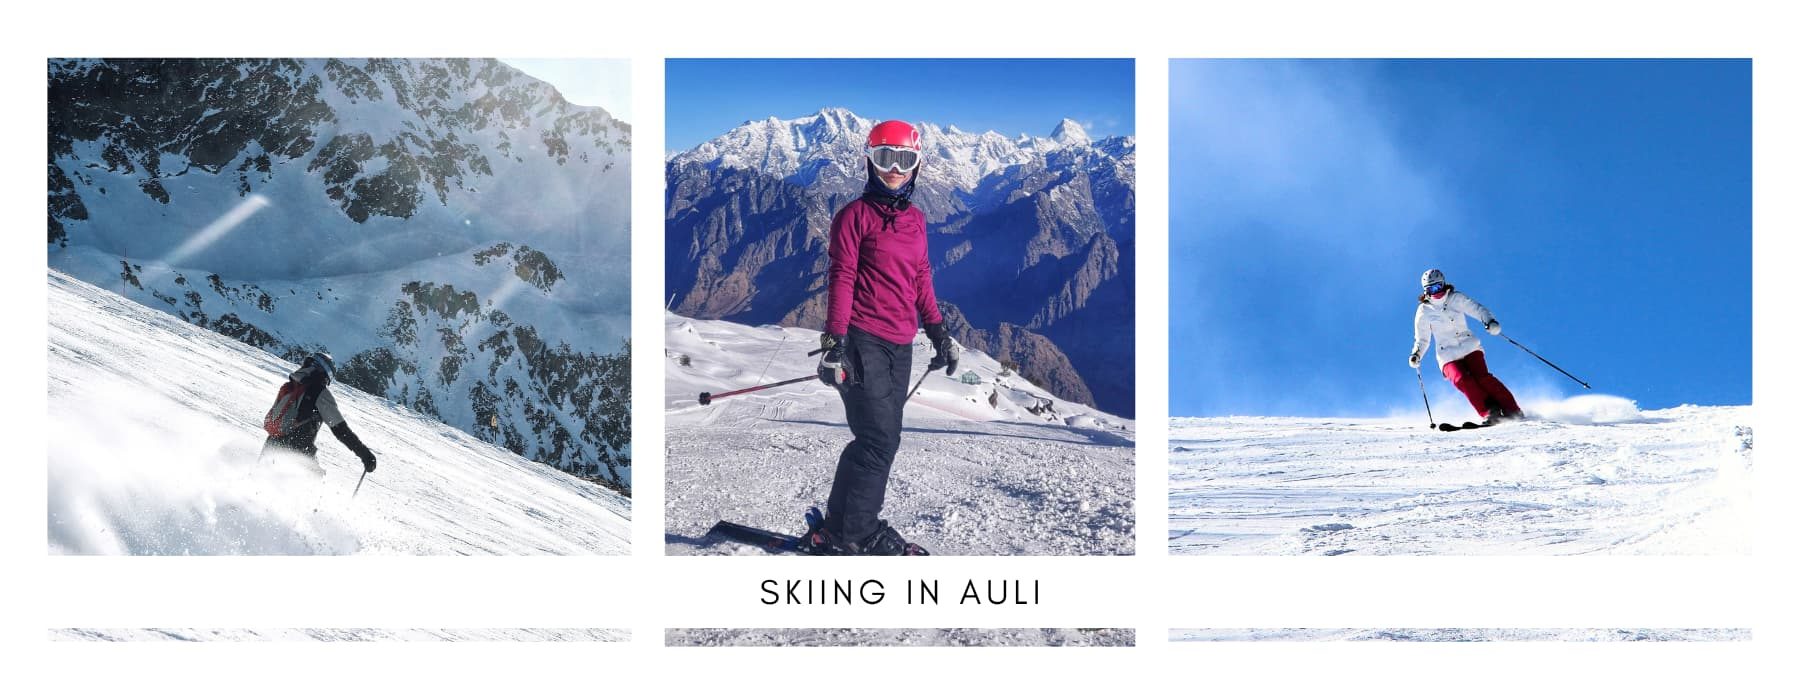 Skiing in auli